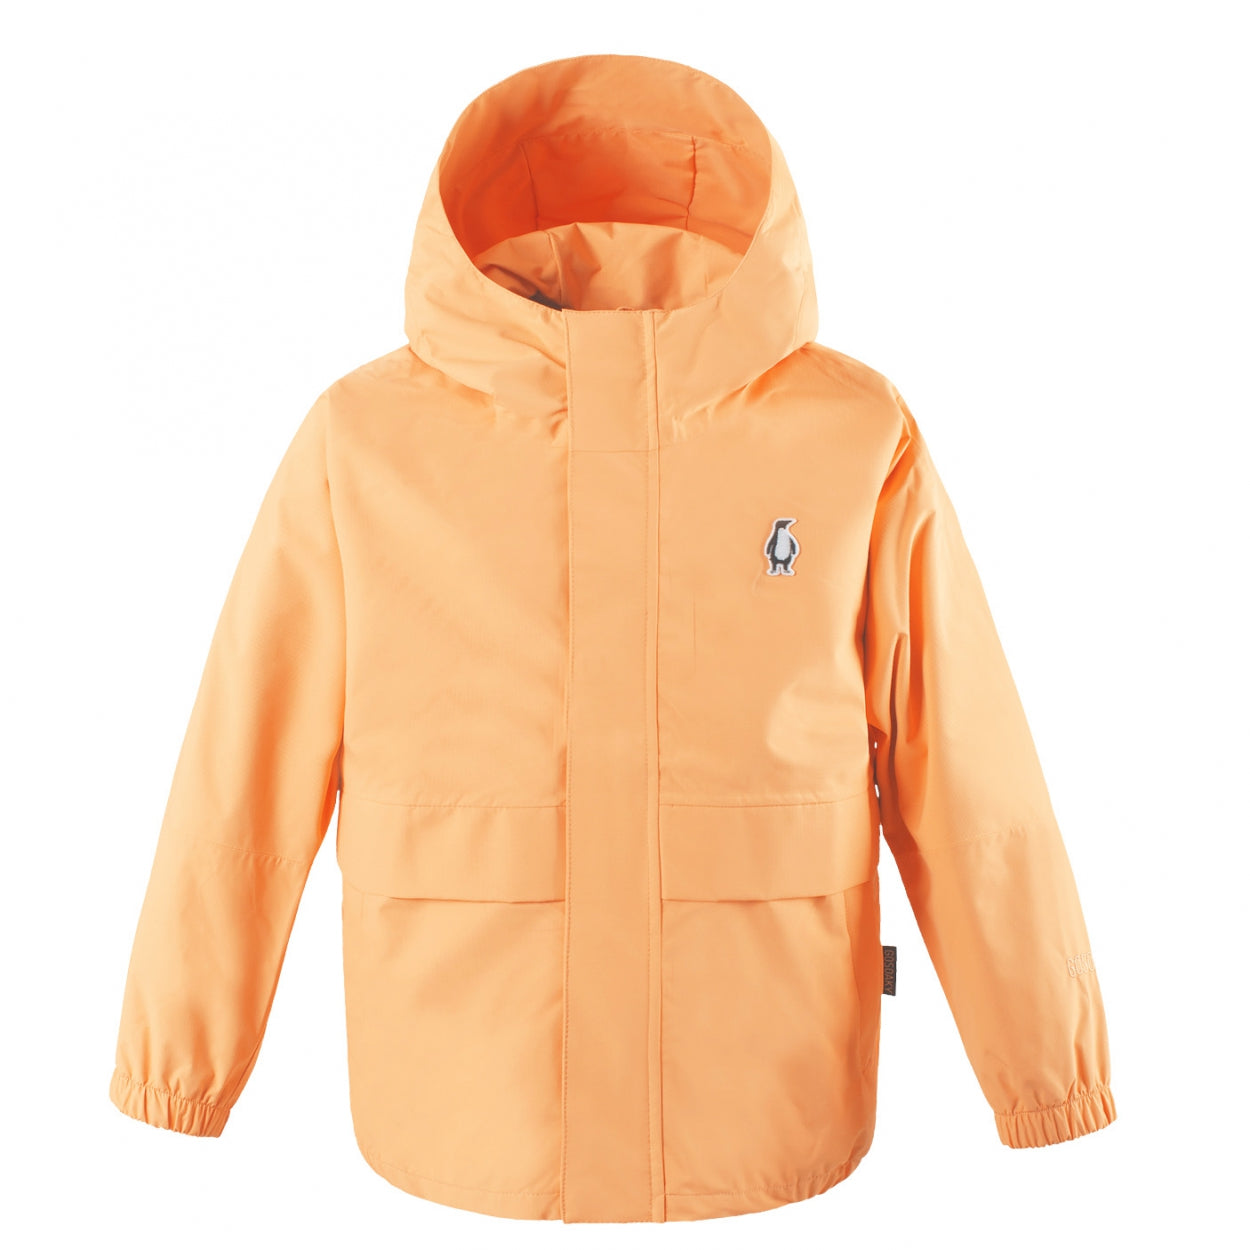 THE LION | BUFF ORANGE kids warm jacket in orange, GOSOAKY 2024.